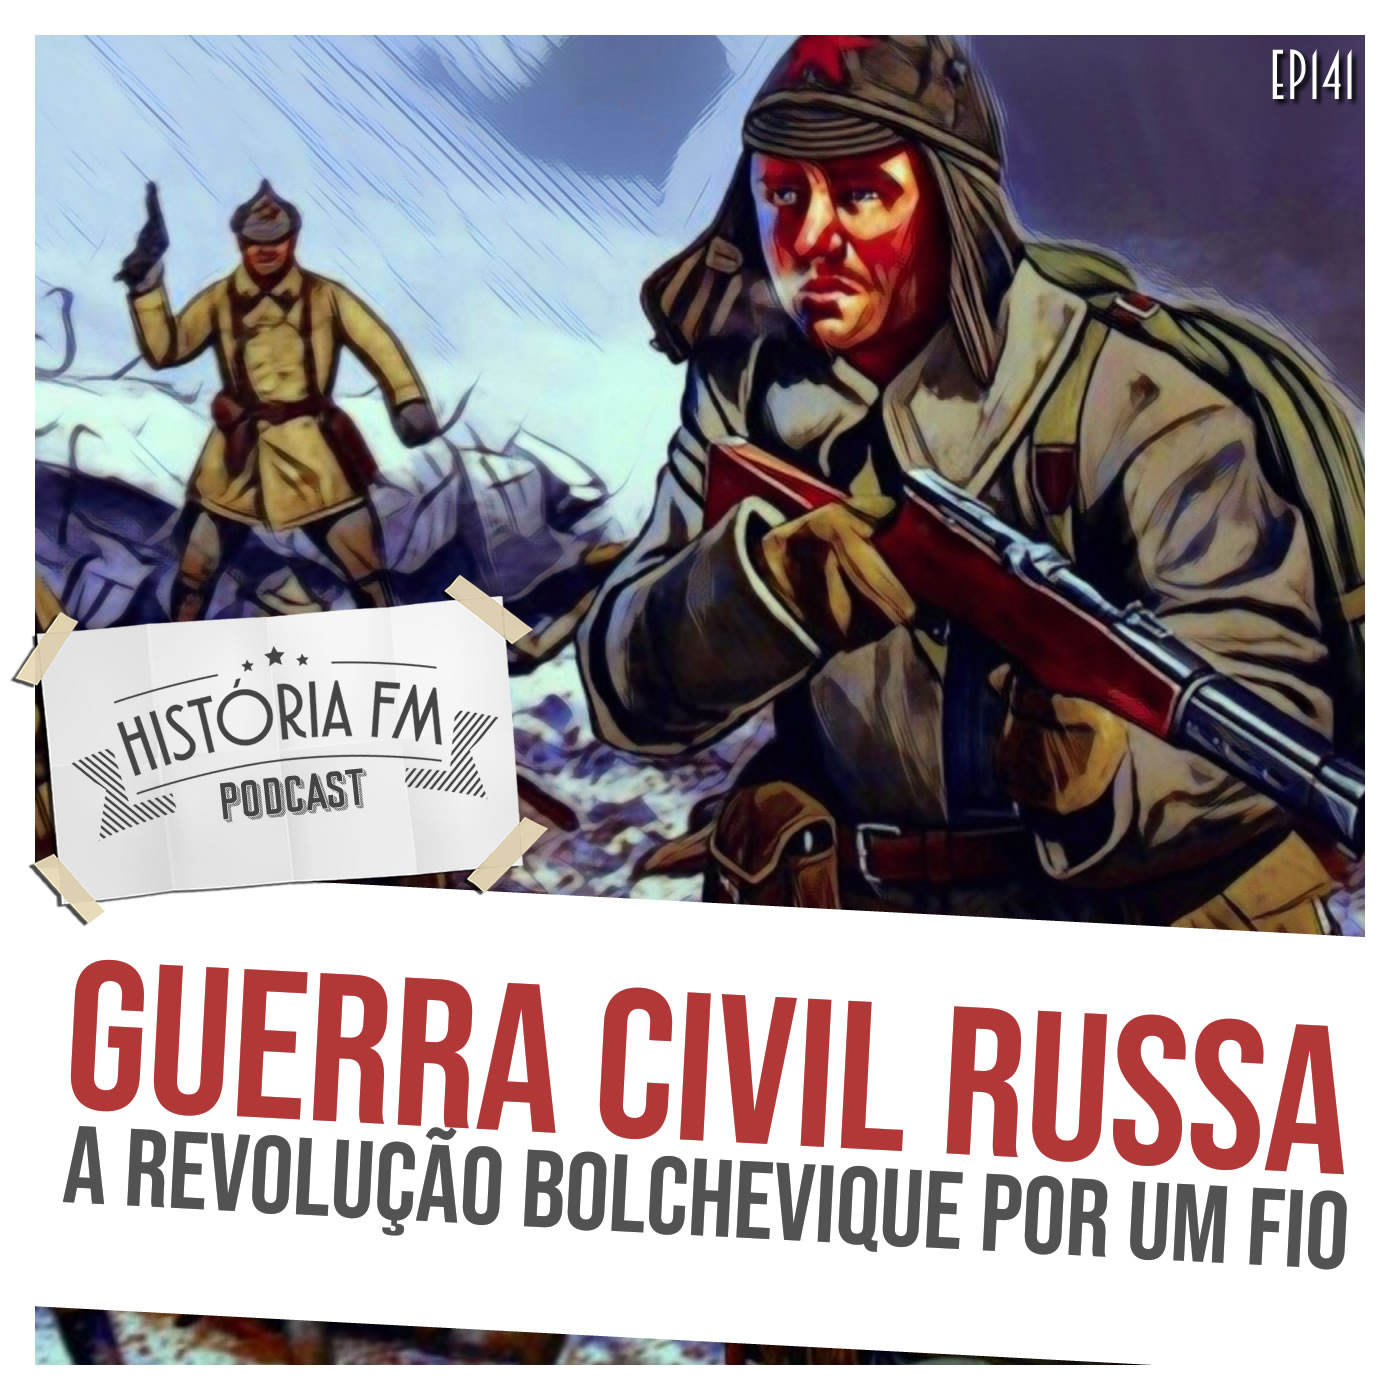 Guerra Civil Russa: a revolução bolchevique por um fio